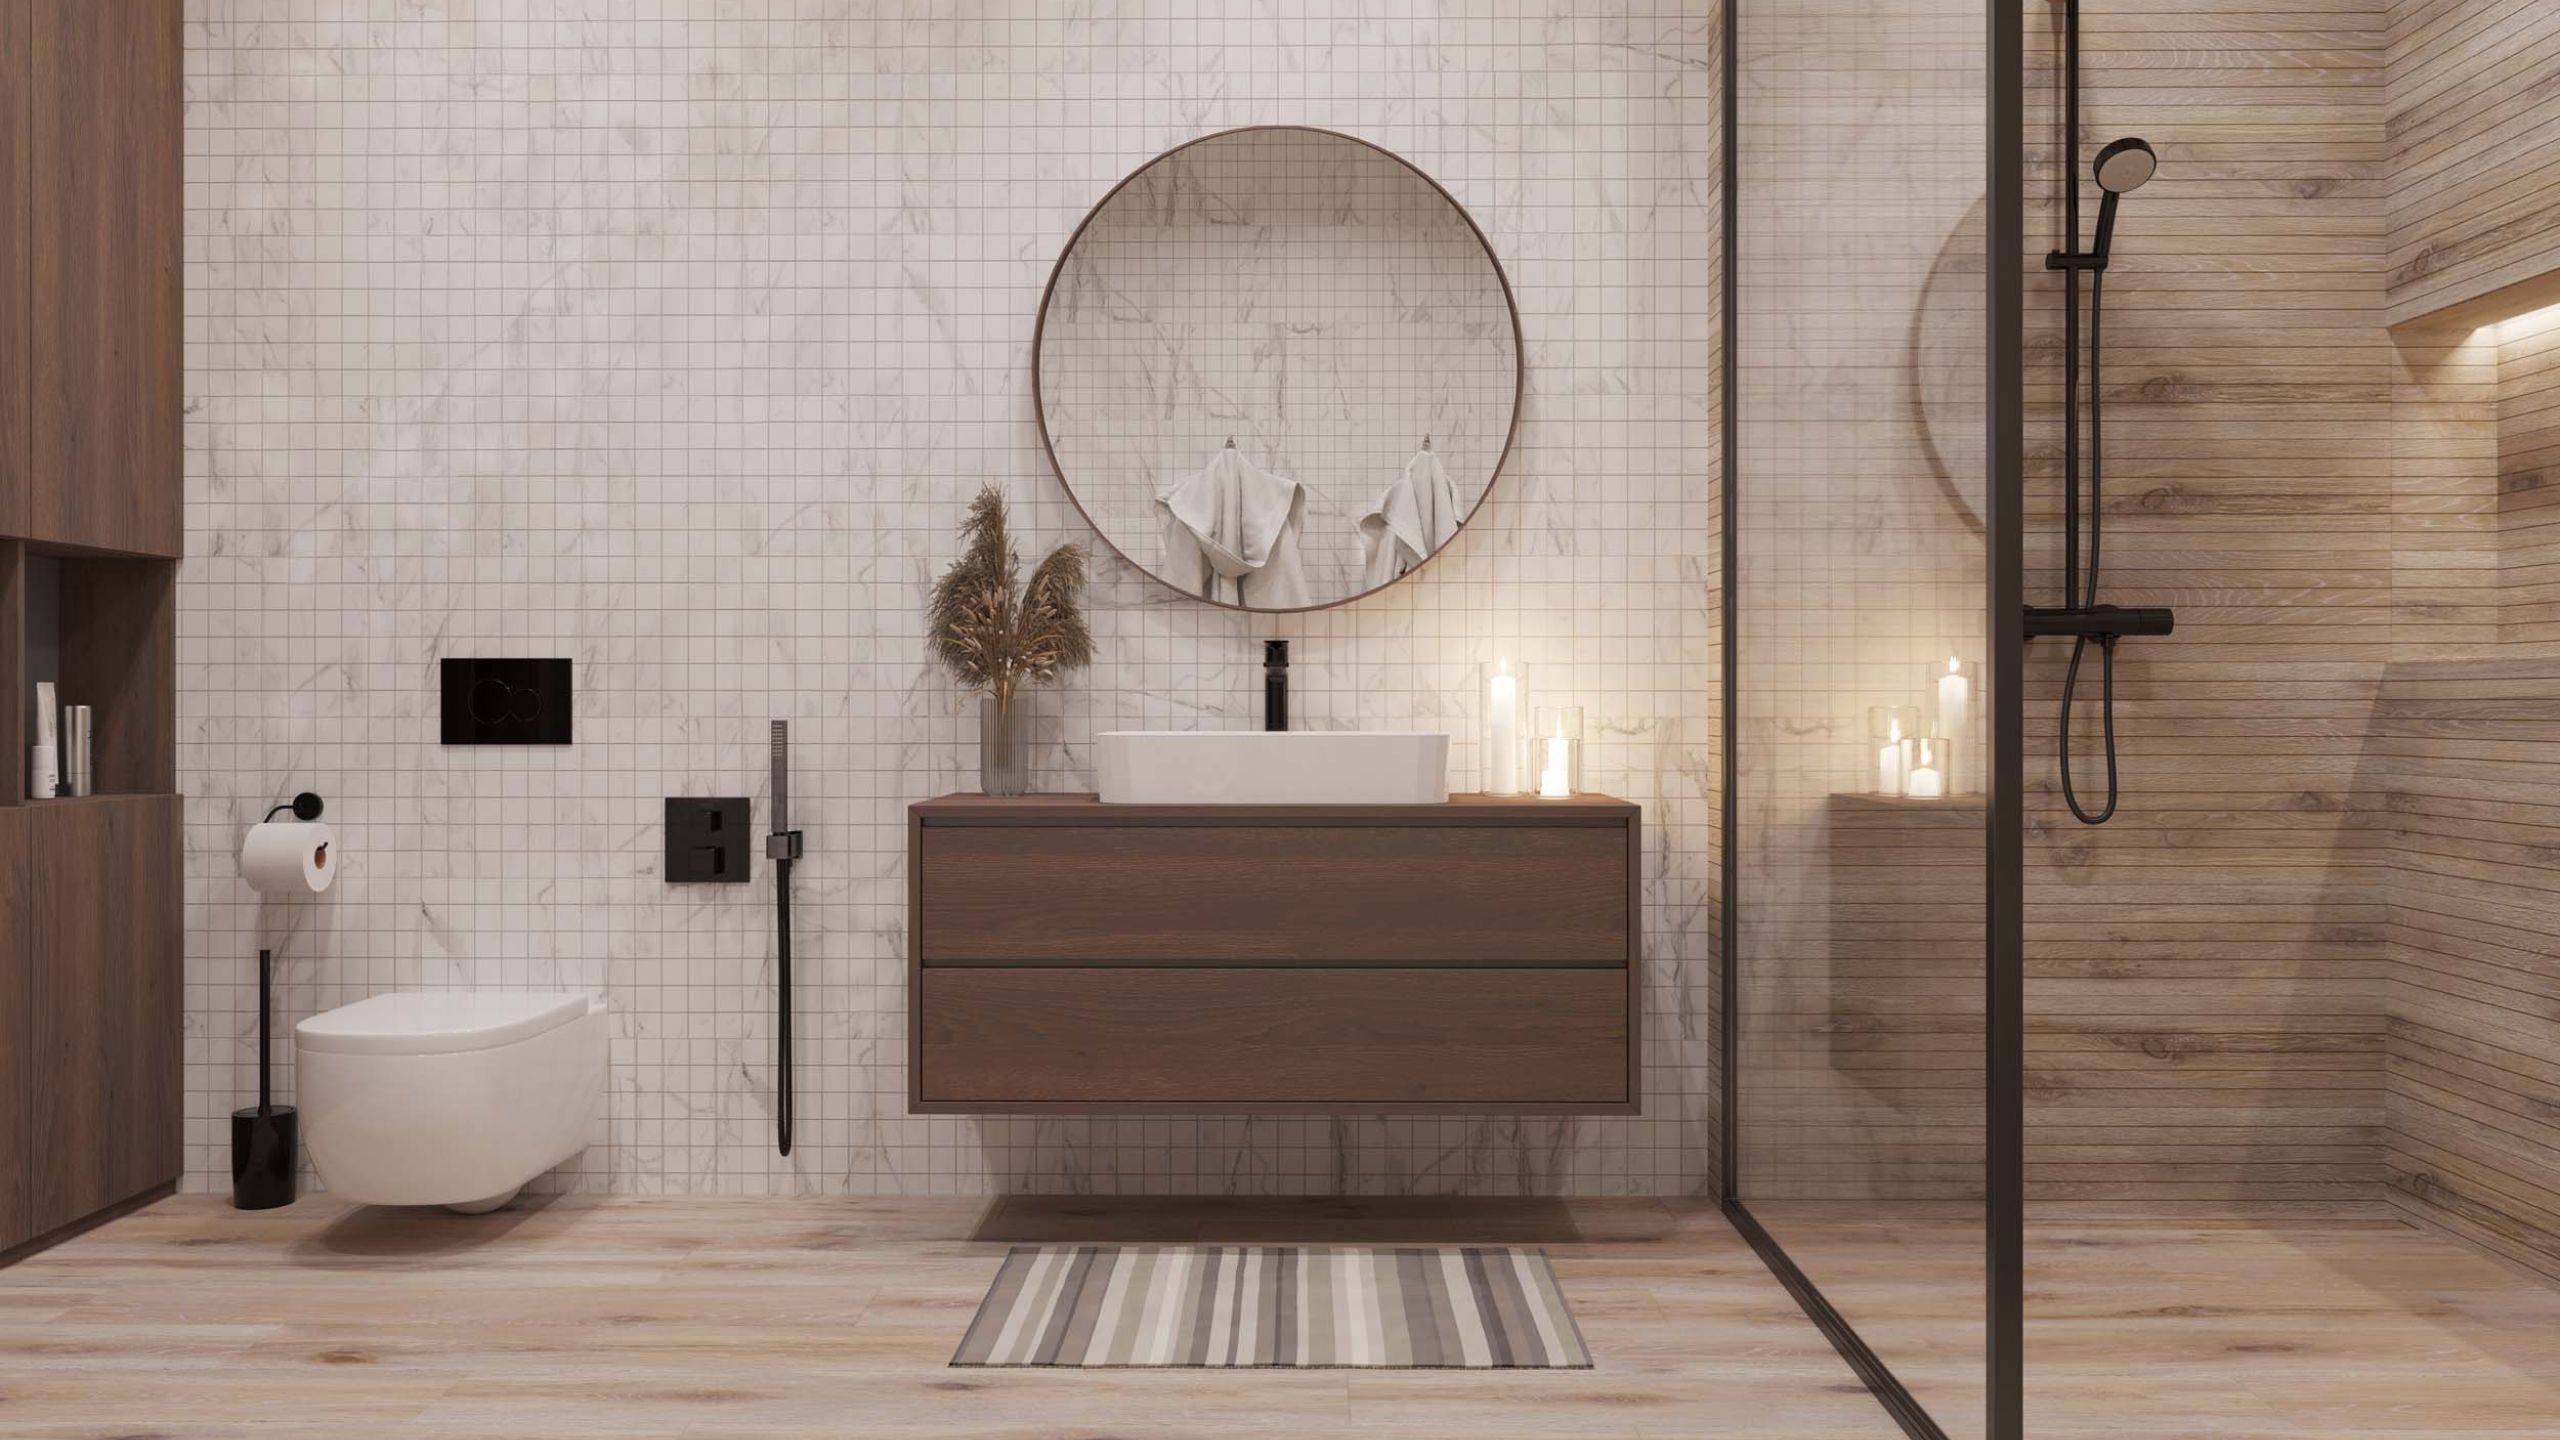 70 идей для дизайна маленькой ванной комнаты